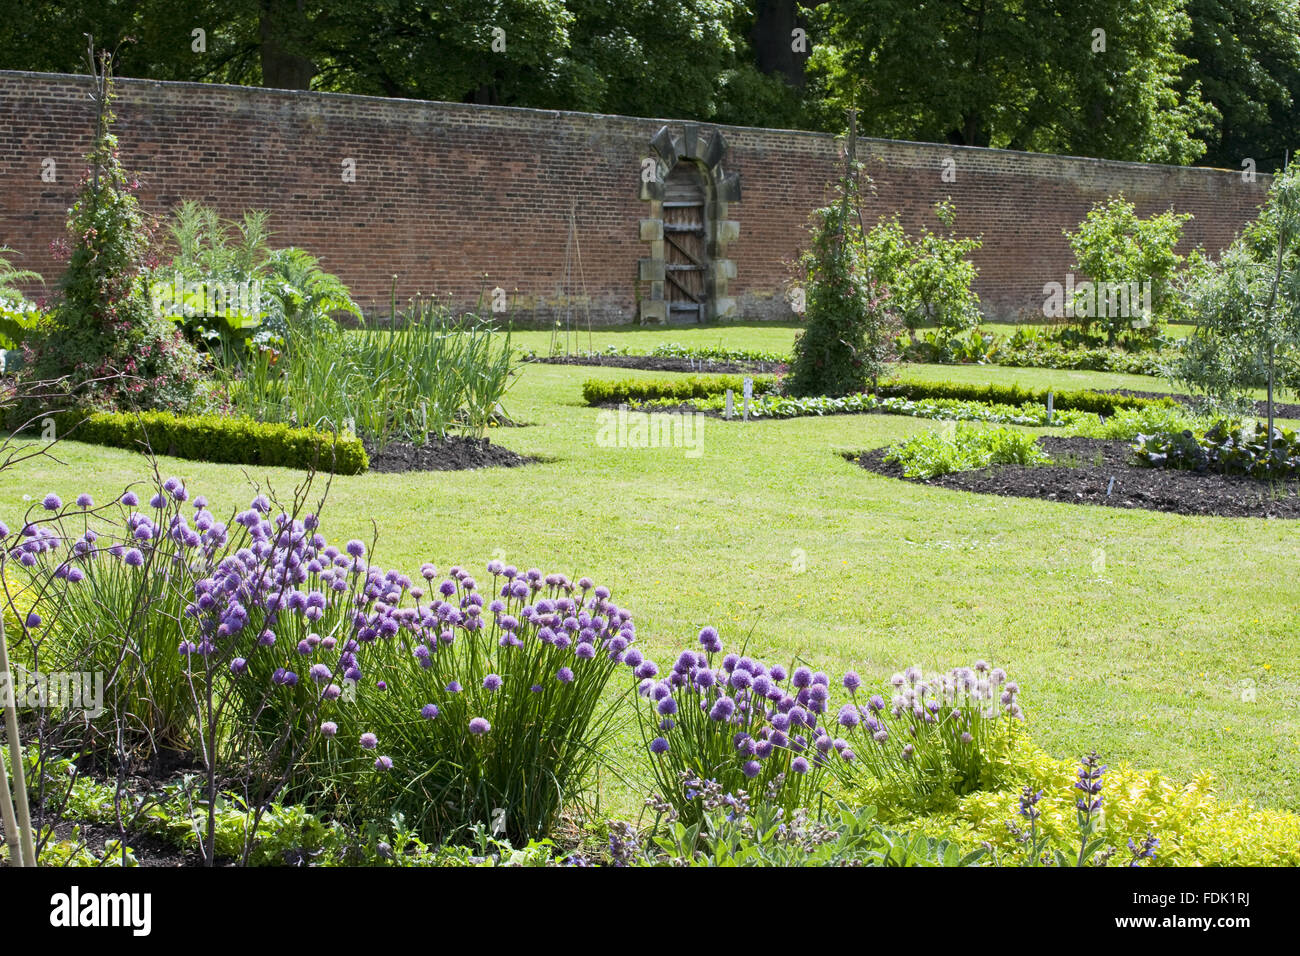 Kräuter und Betten in den Walled Garden umfasst 4 Hektar auf Gibside, Newcastle Upon Tyne. Gemüse wachsen organisch in den Walled Garden. Stockfoto